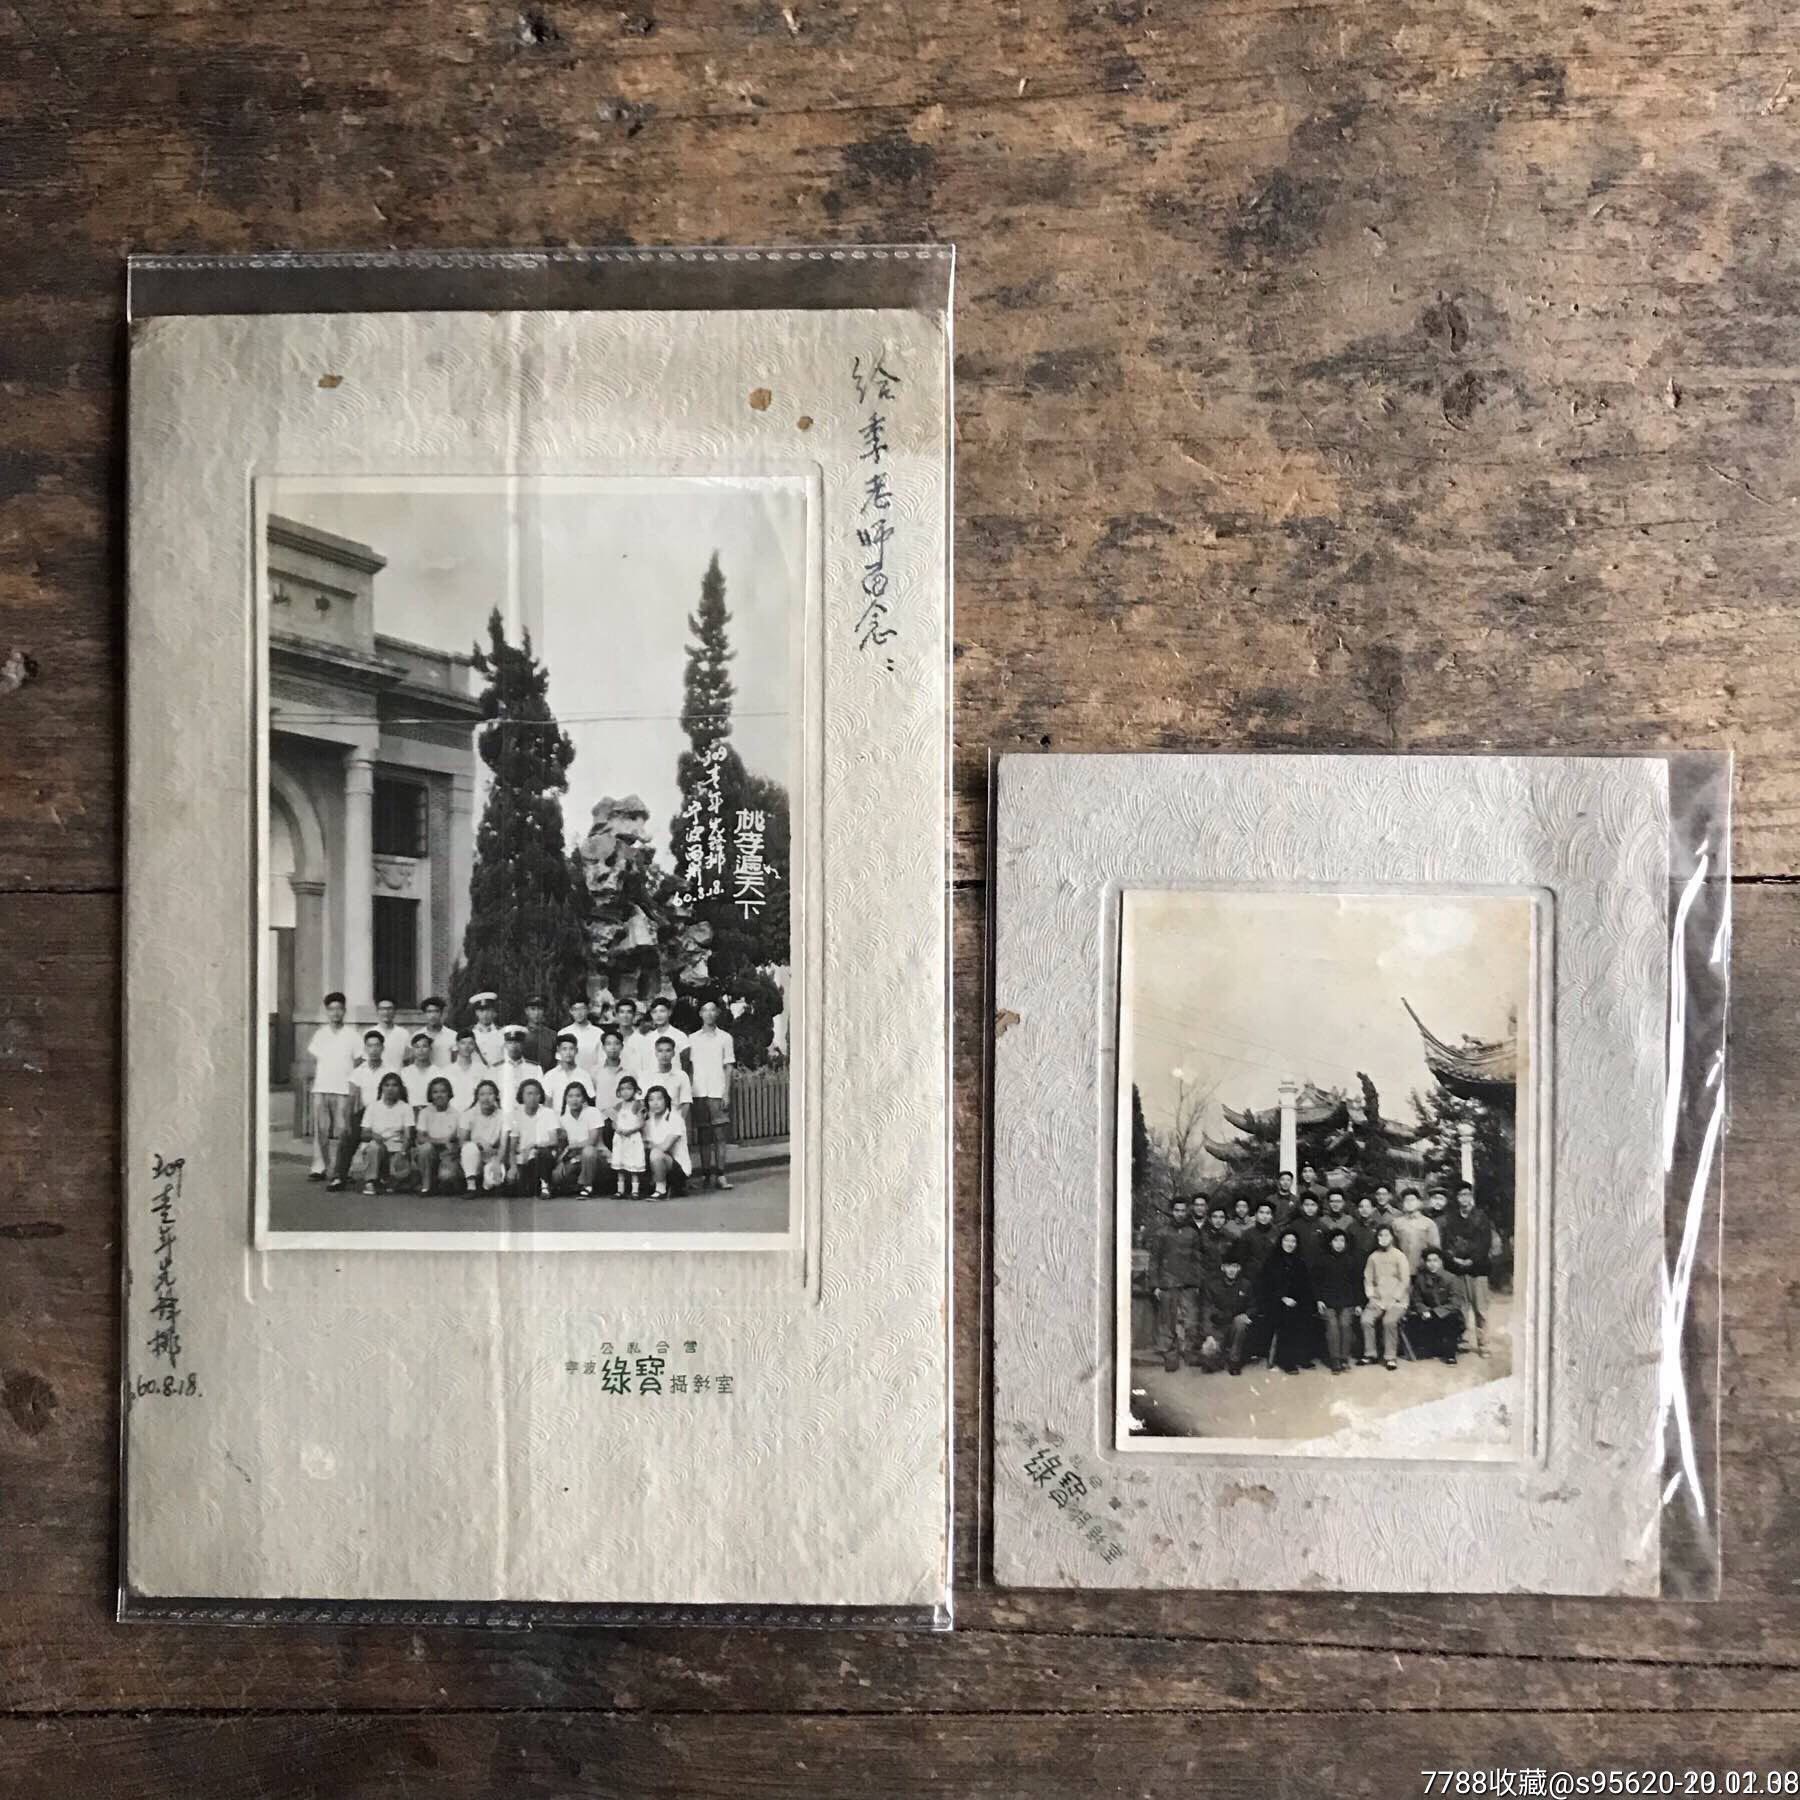 民国后老照片公私合营老照片60年代宁波老照片中山公园背景老师学生